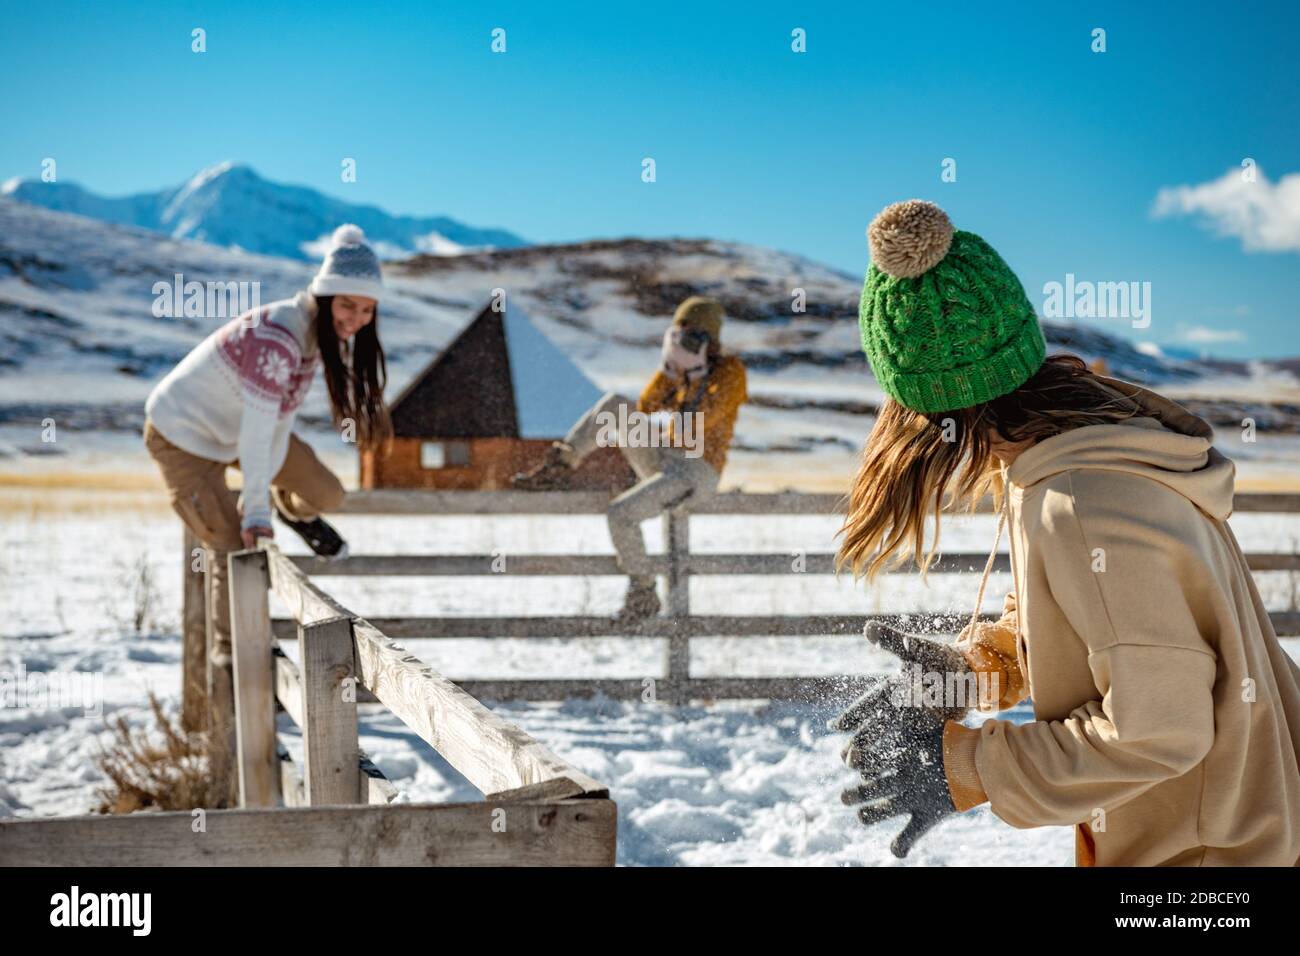 Trois jeunes amies heureuses s'amusent à la clôture en bois en hiver en plein air dans les montagnes. Concept vacances d'hiver Banque D'Images